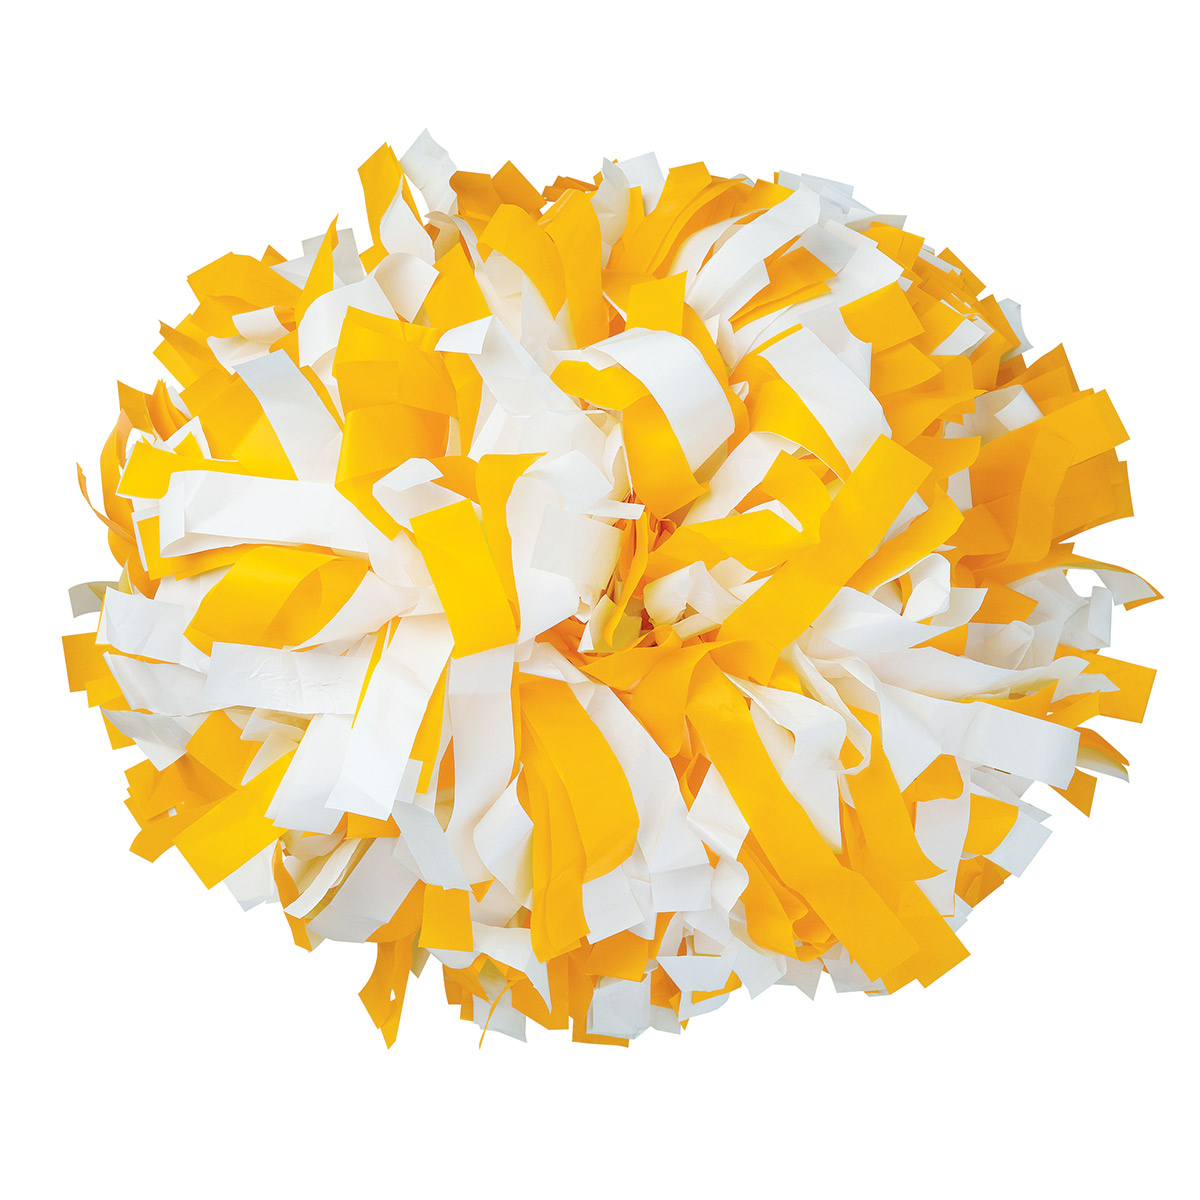 2-Tone Yellow & White Spirit Cheer Pom-Poms, Birthday, Toys, 24 Pieces